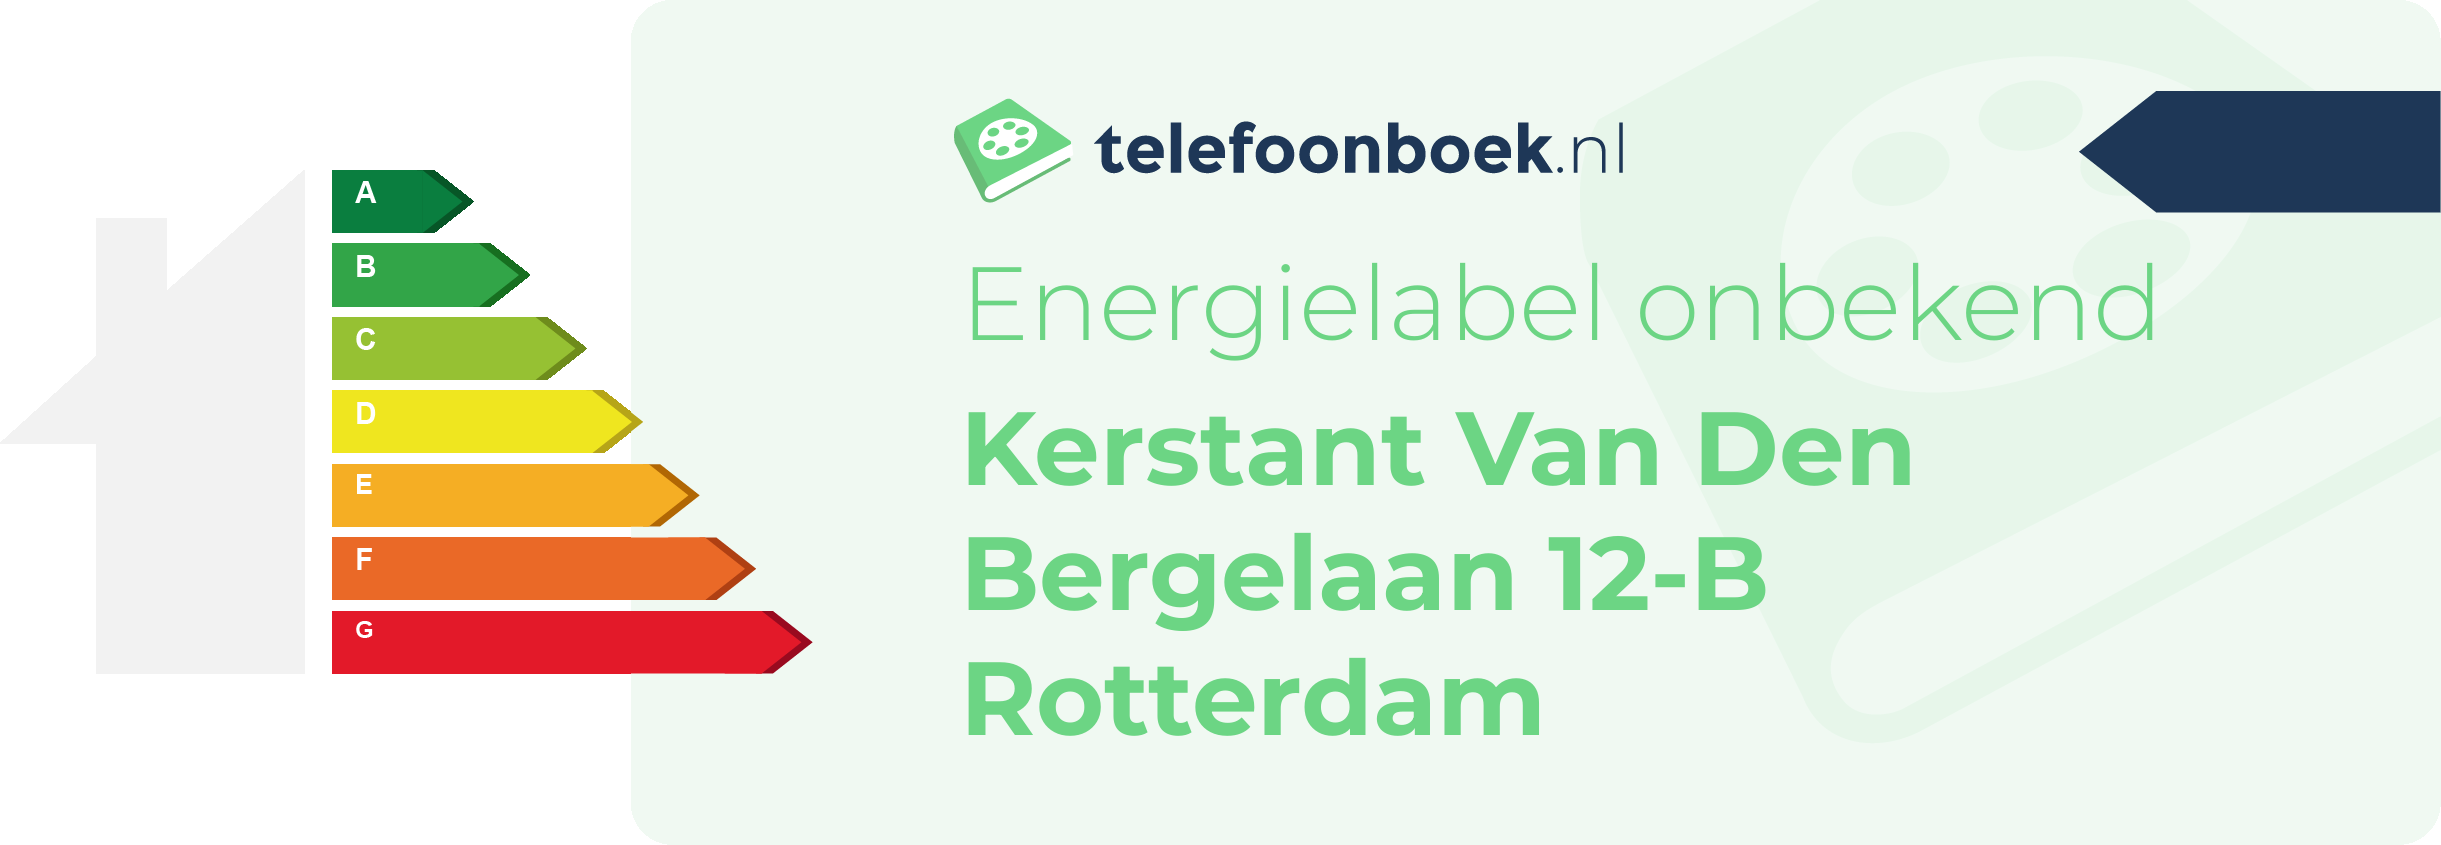 Energielabel Kerstant Van Den Bergelaan 12-B Rotterdam